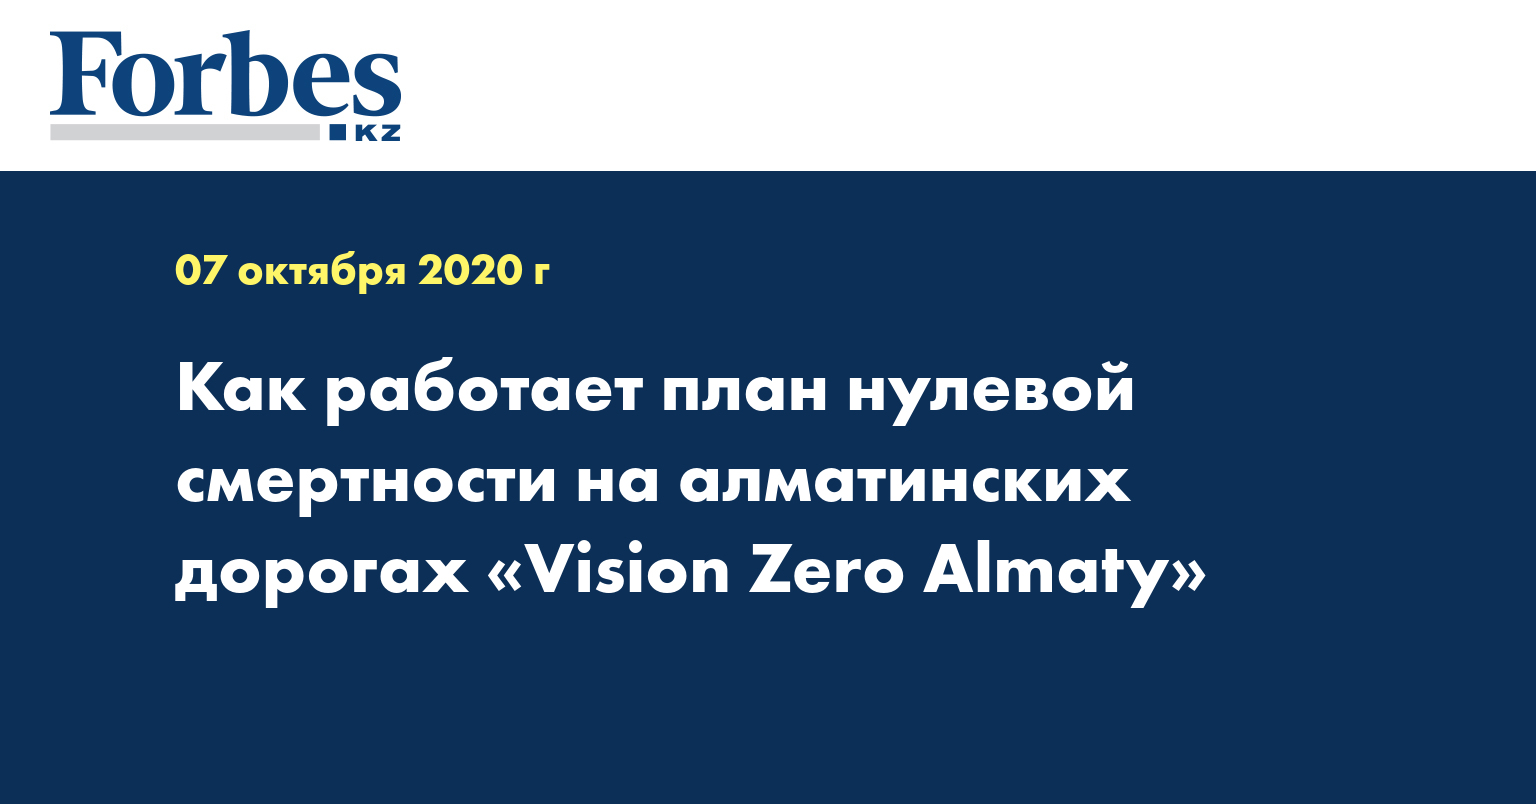 Как работает план нулевой смертности на алматинских дорогах «Vision Zero Almaty»